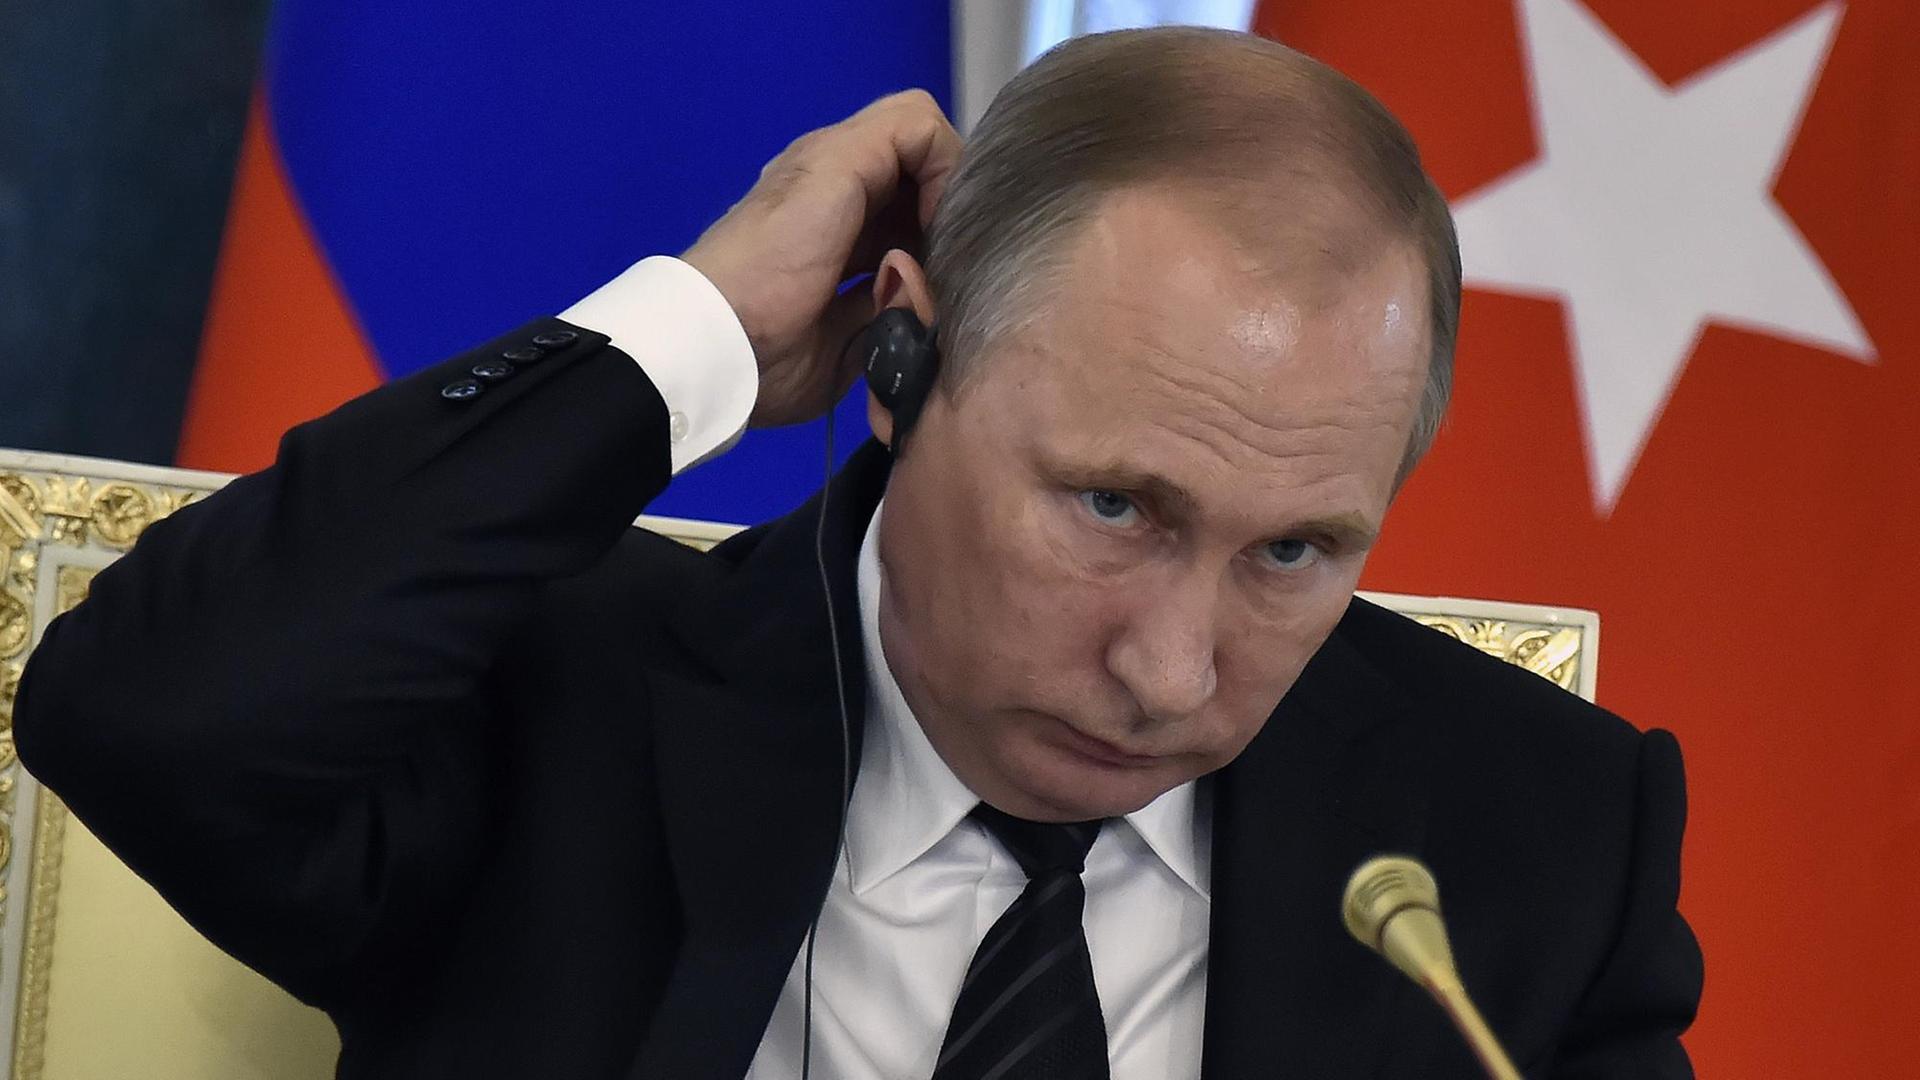 Der russische Präsident Wladimir Putin während einer Pressekonferenz in Sankt Petersburg